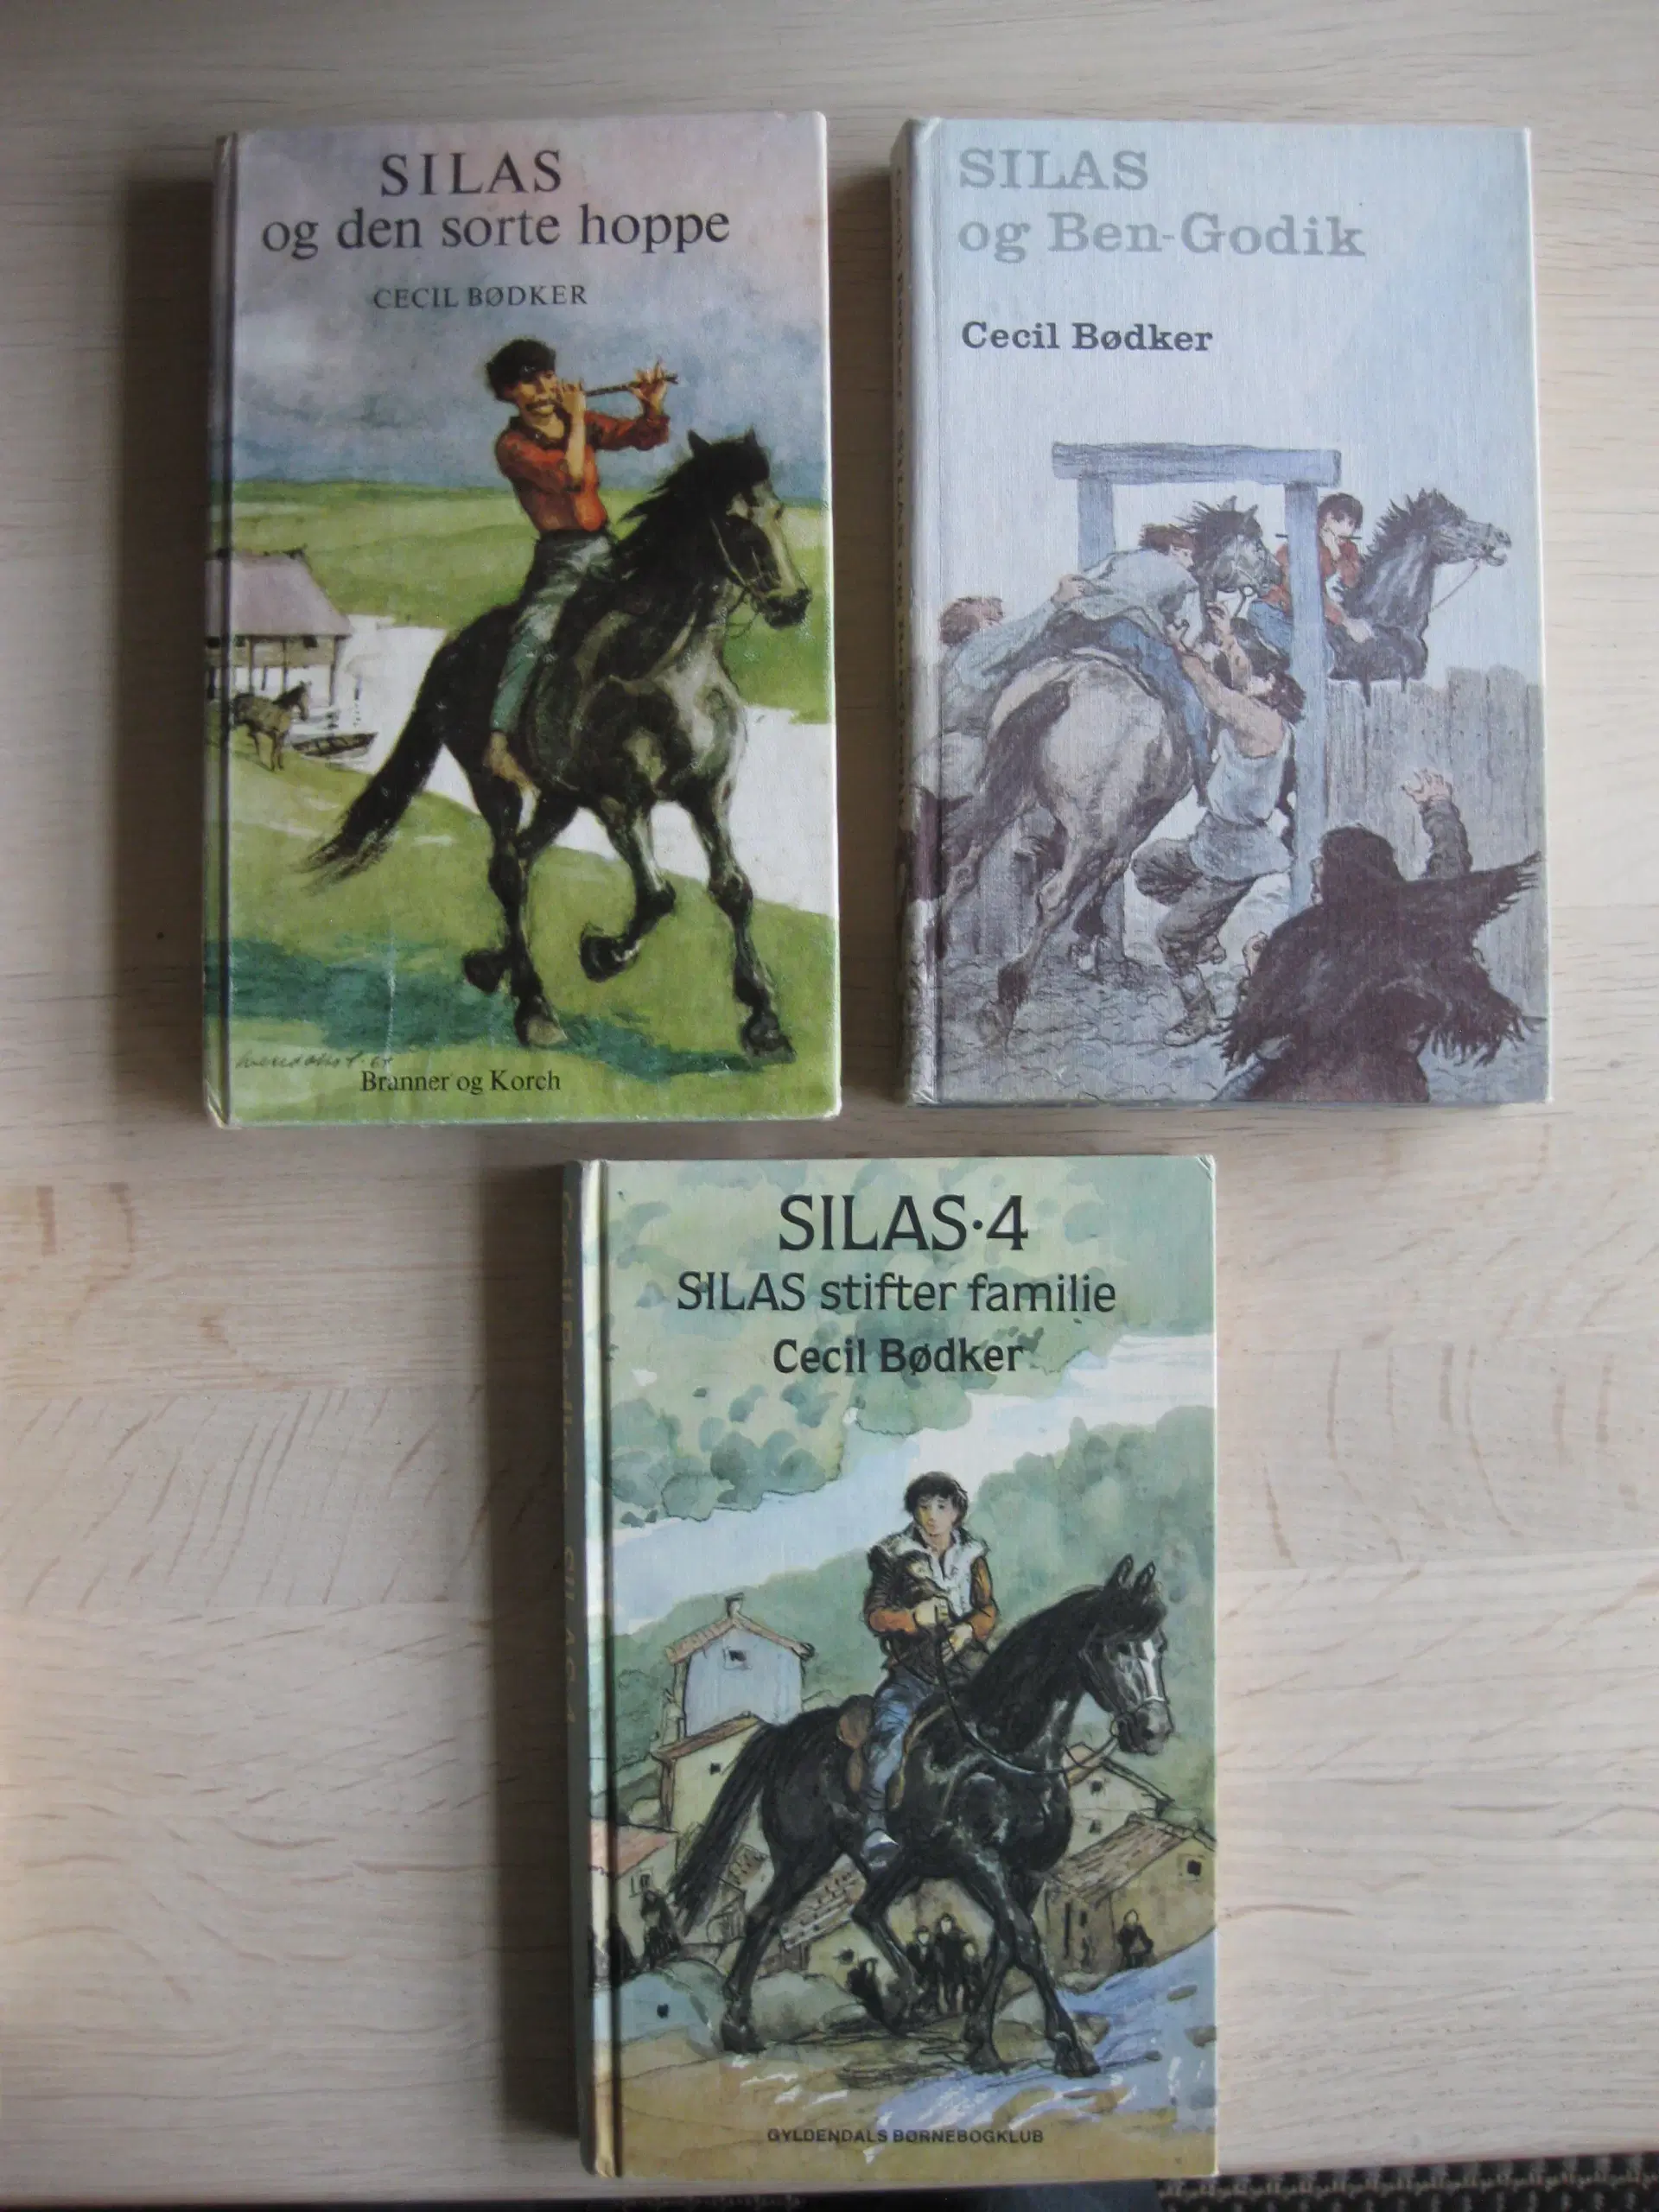 Silas - bøger af Cecil Bødker ;-)